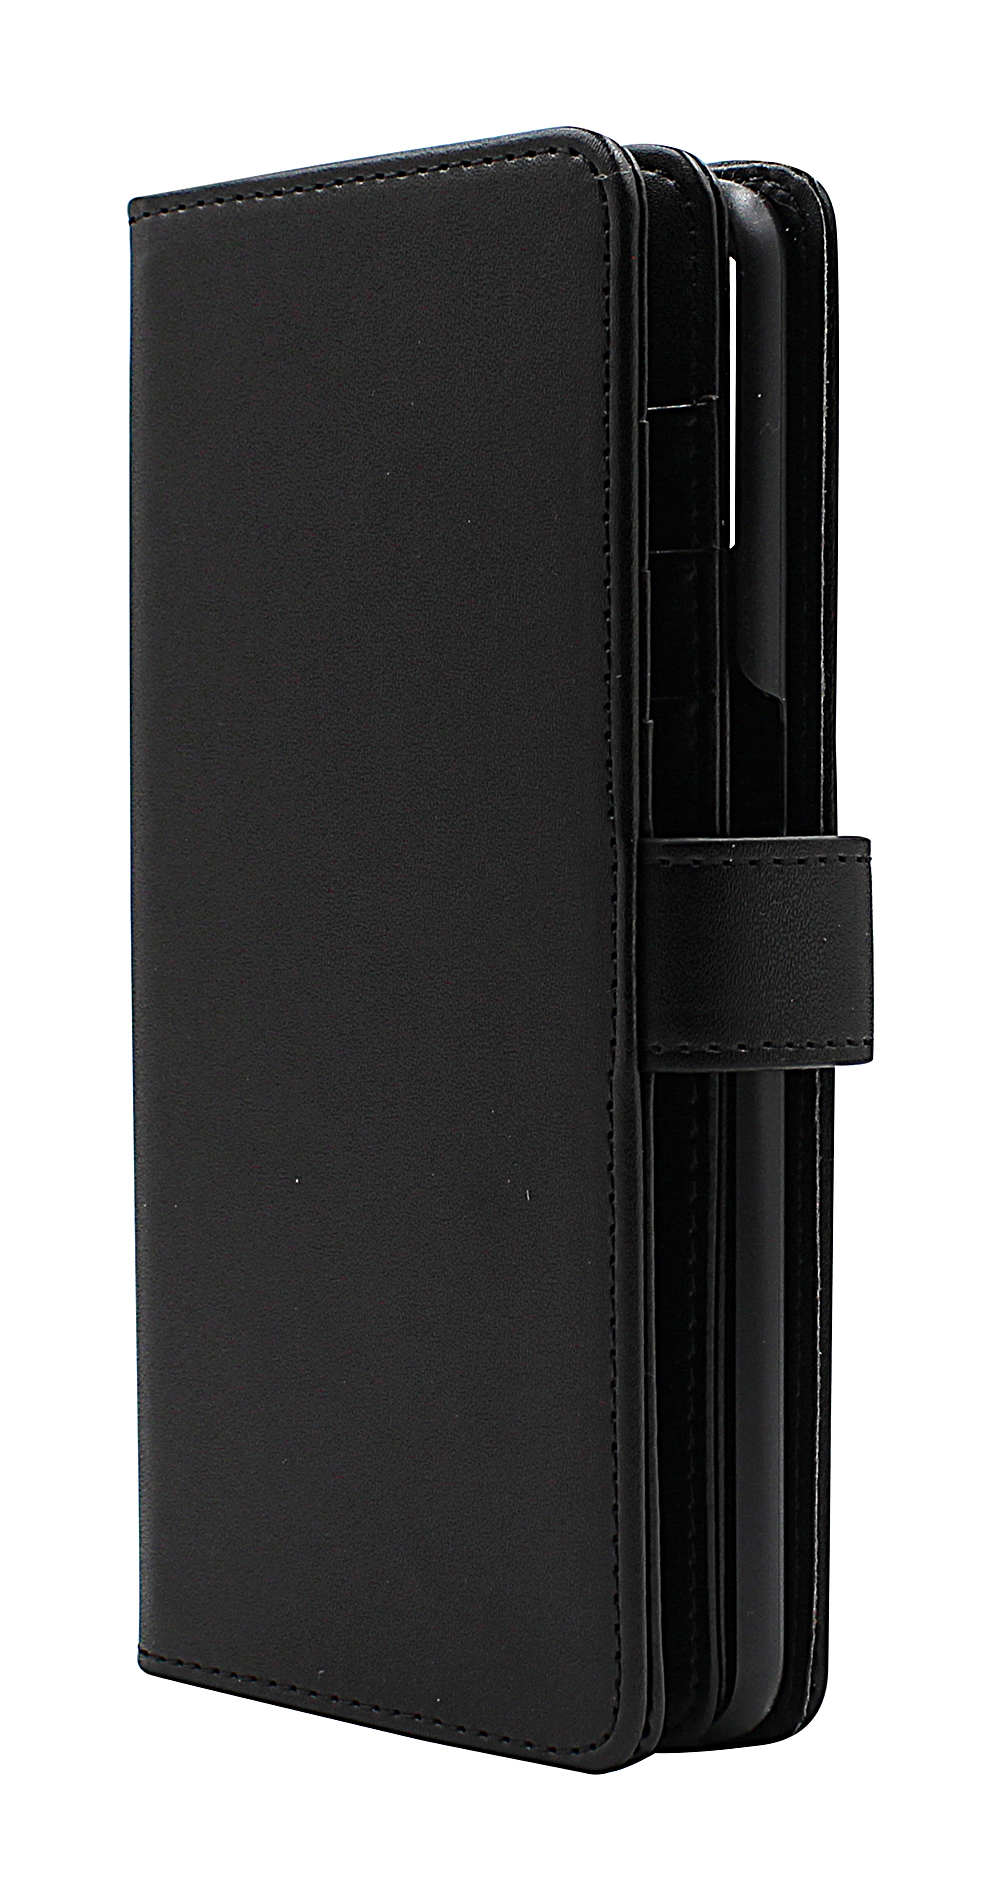 CoverInSkimblocker XL Wallet OnePlus Nord N10